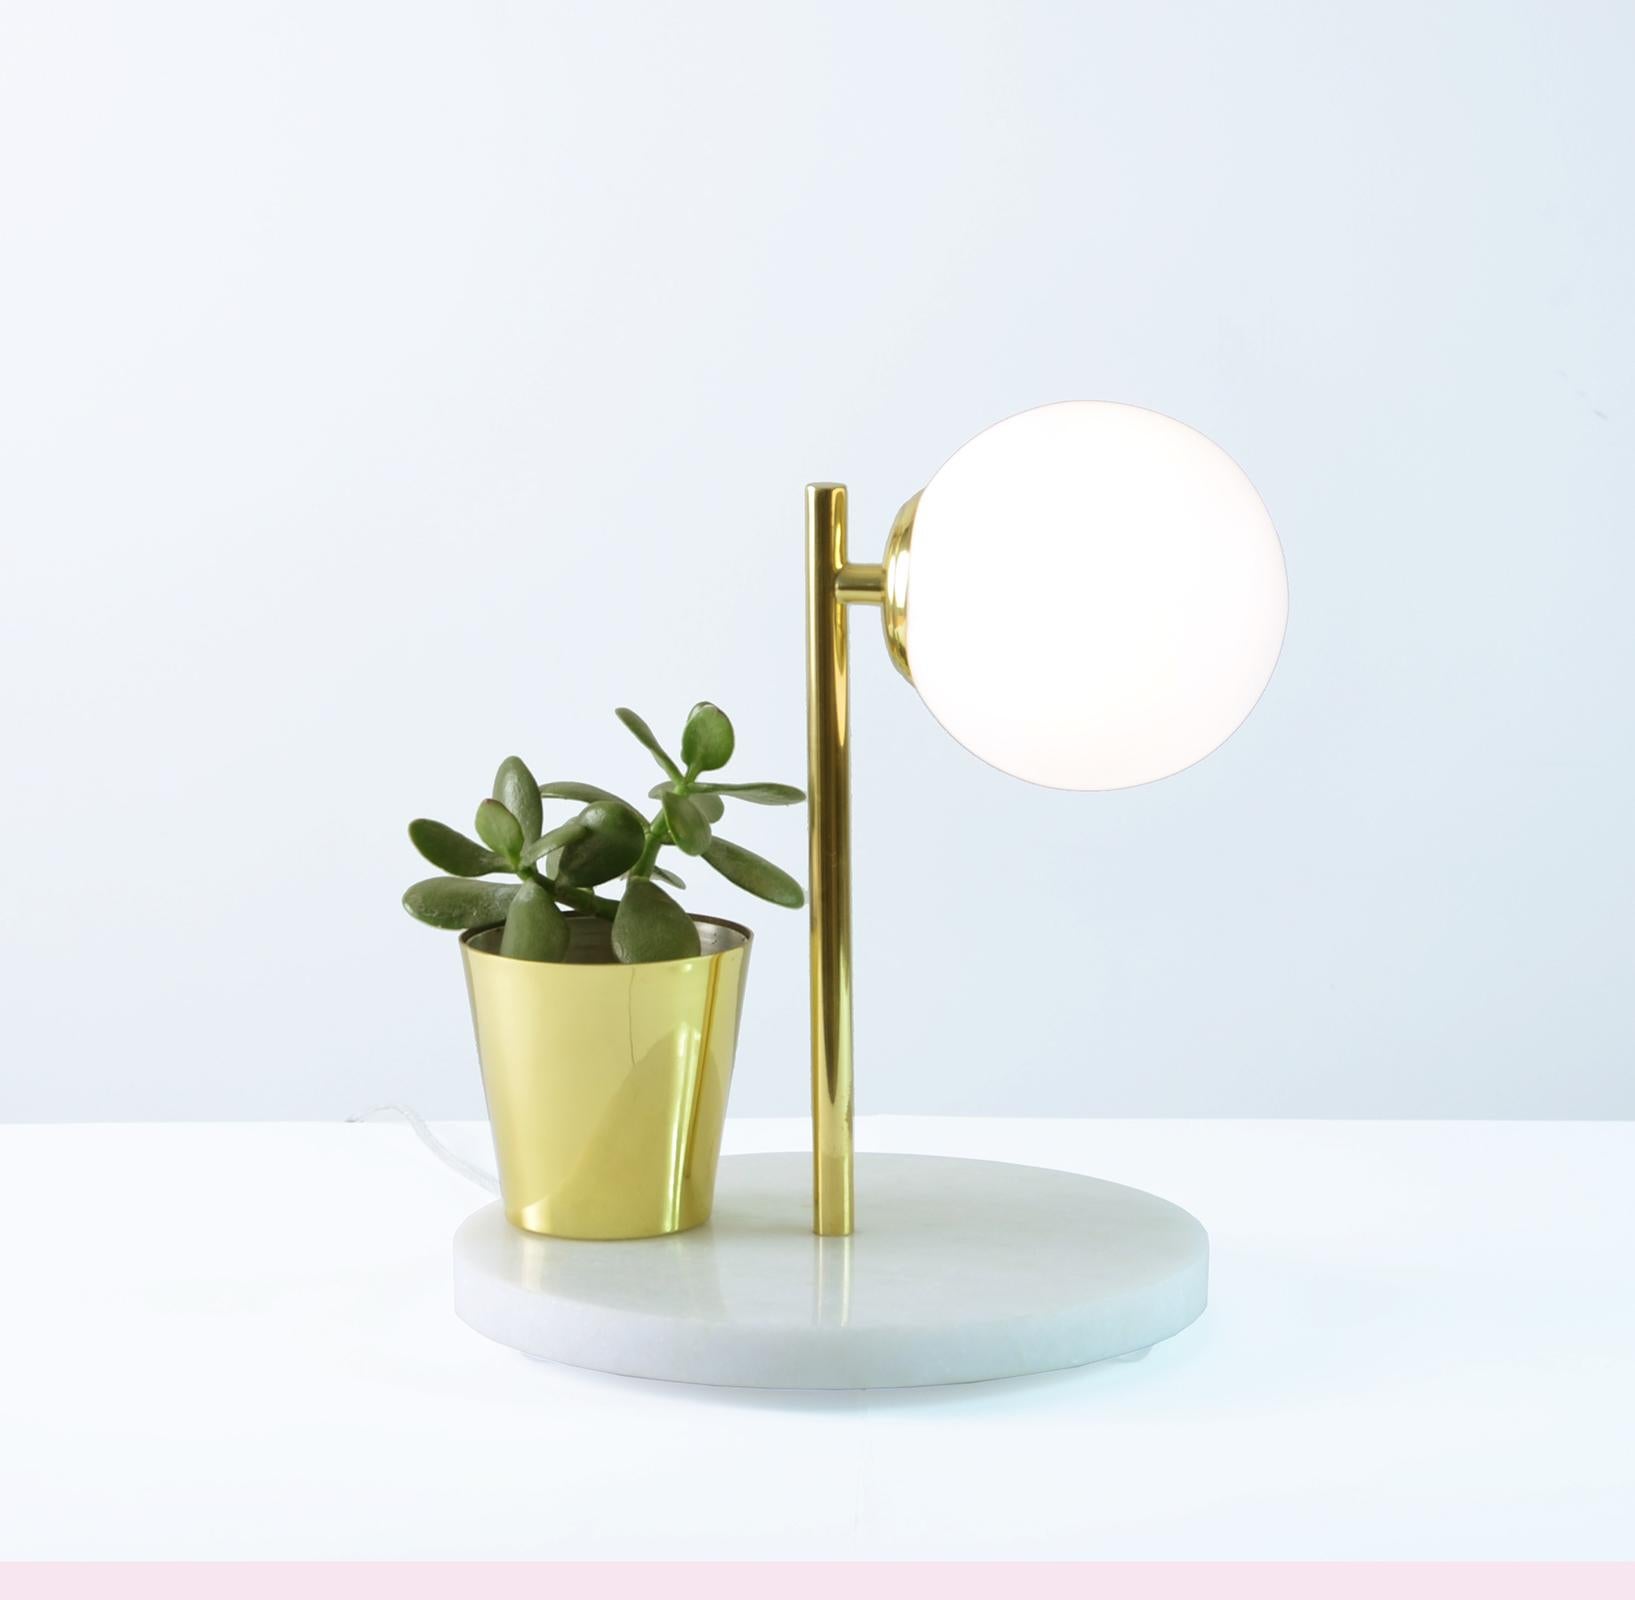 Liliput Lampe de table contemporaine minimaliste et poétique de Cristiana Bertolucci
Original et charmant lampe de table avec base en marbre, tige et vase en laiton poli et diffuseur en verre. Le nom donne la différence d'échelle dans l'histoire du